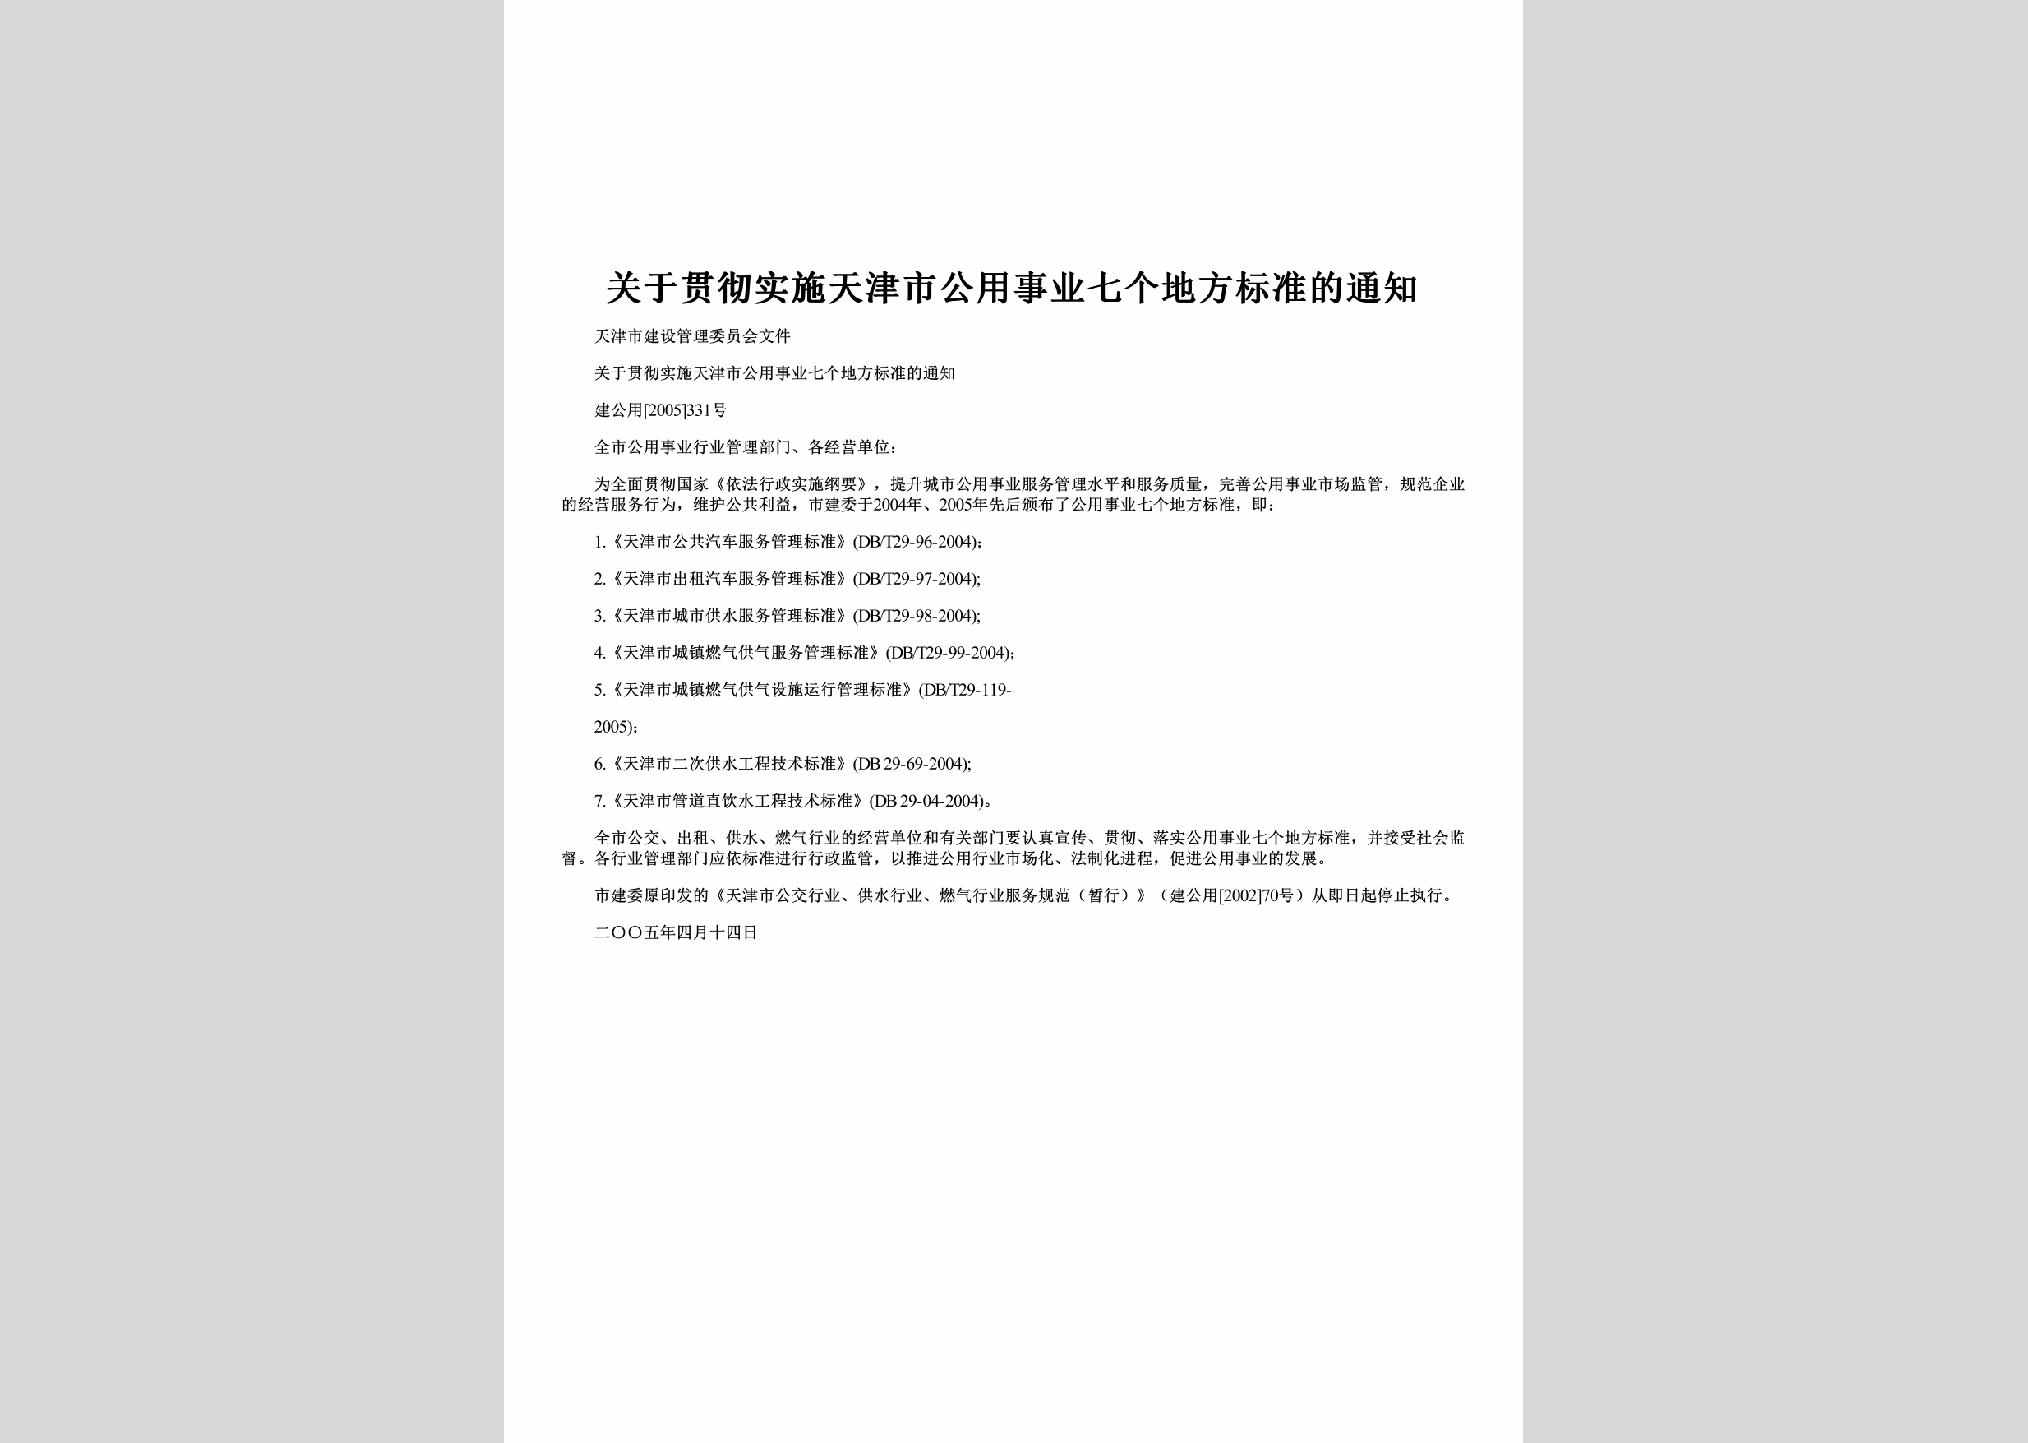 建公用[2005]331号：关于贯彻实施天津市公用事业七个地方标准的通知